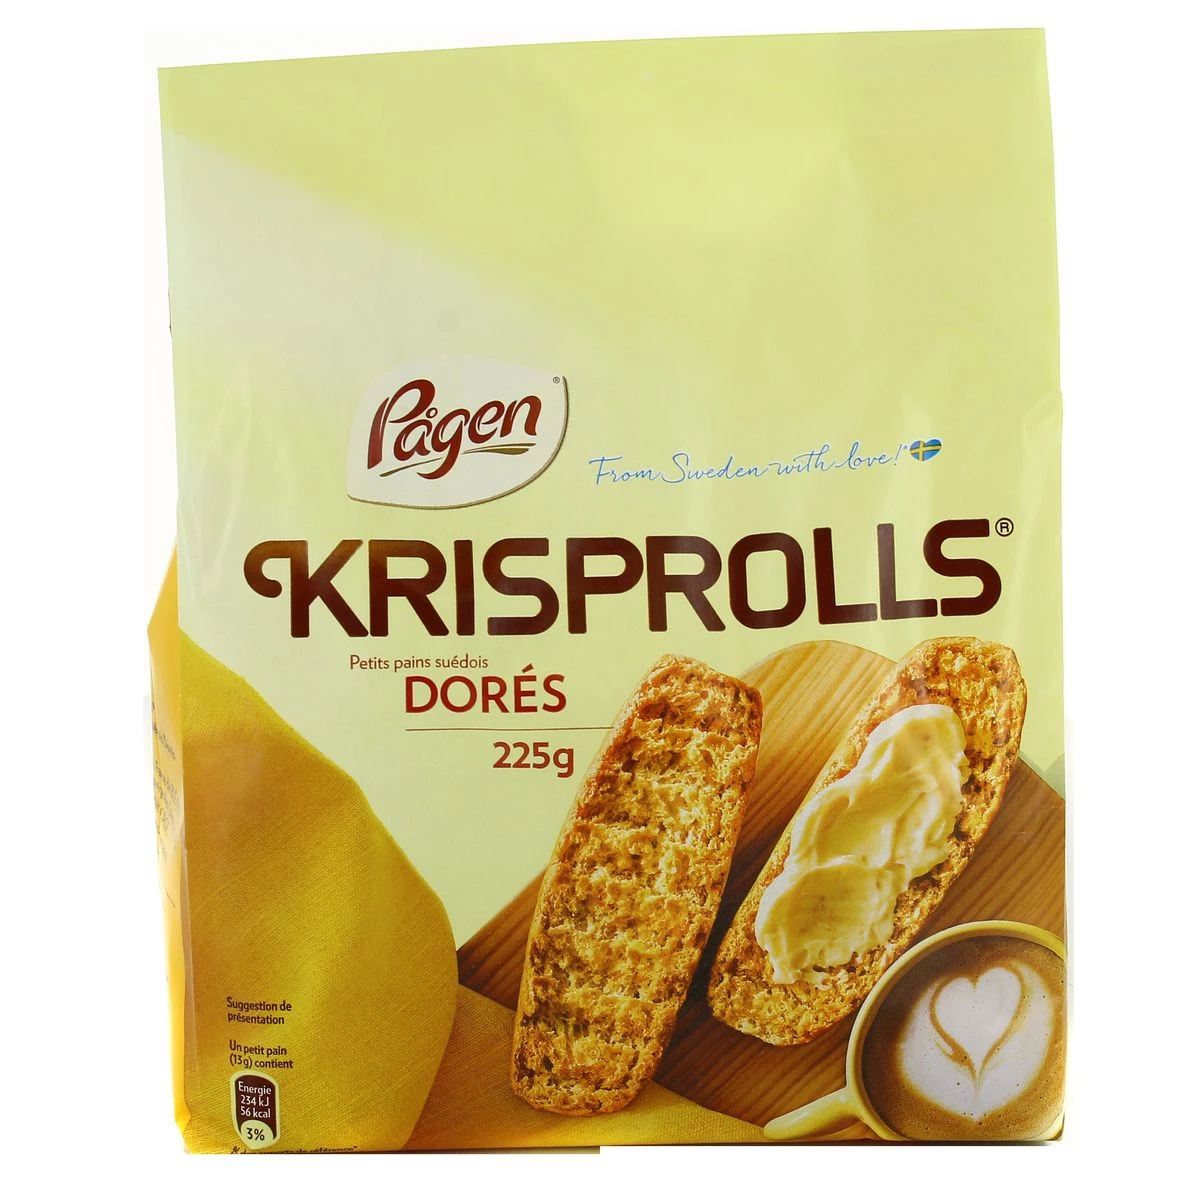 瑞典金黄面包卷 240g - KRISPROLLS